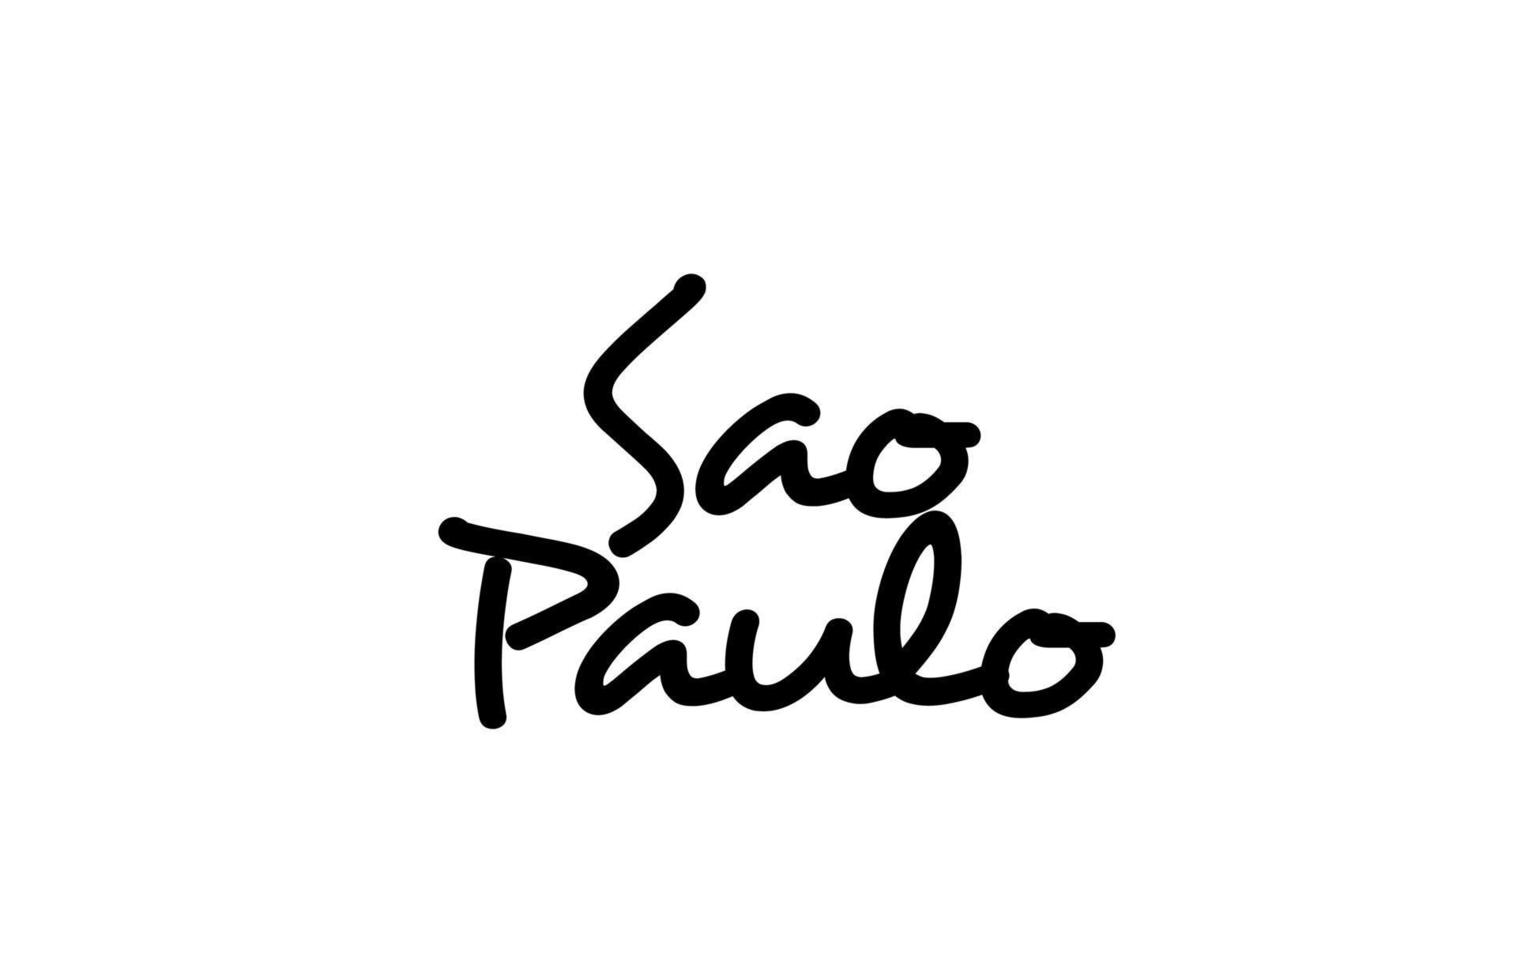 lettrage à la main du texte manuscrit de la ville de sao paulo. texte de calligraphie. typographie en couleur noire vecteur